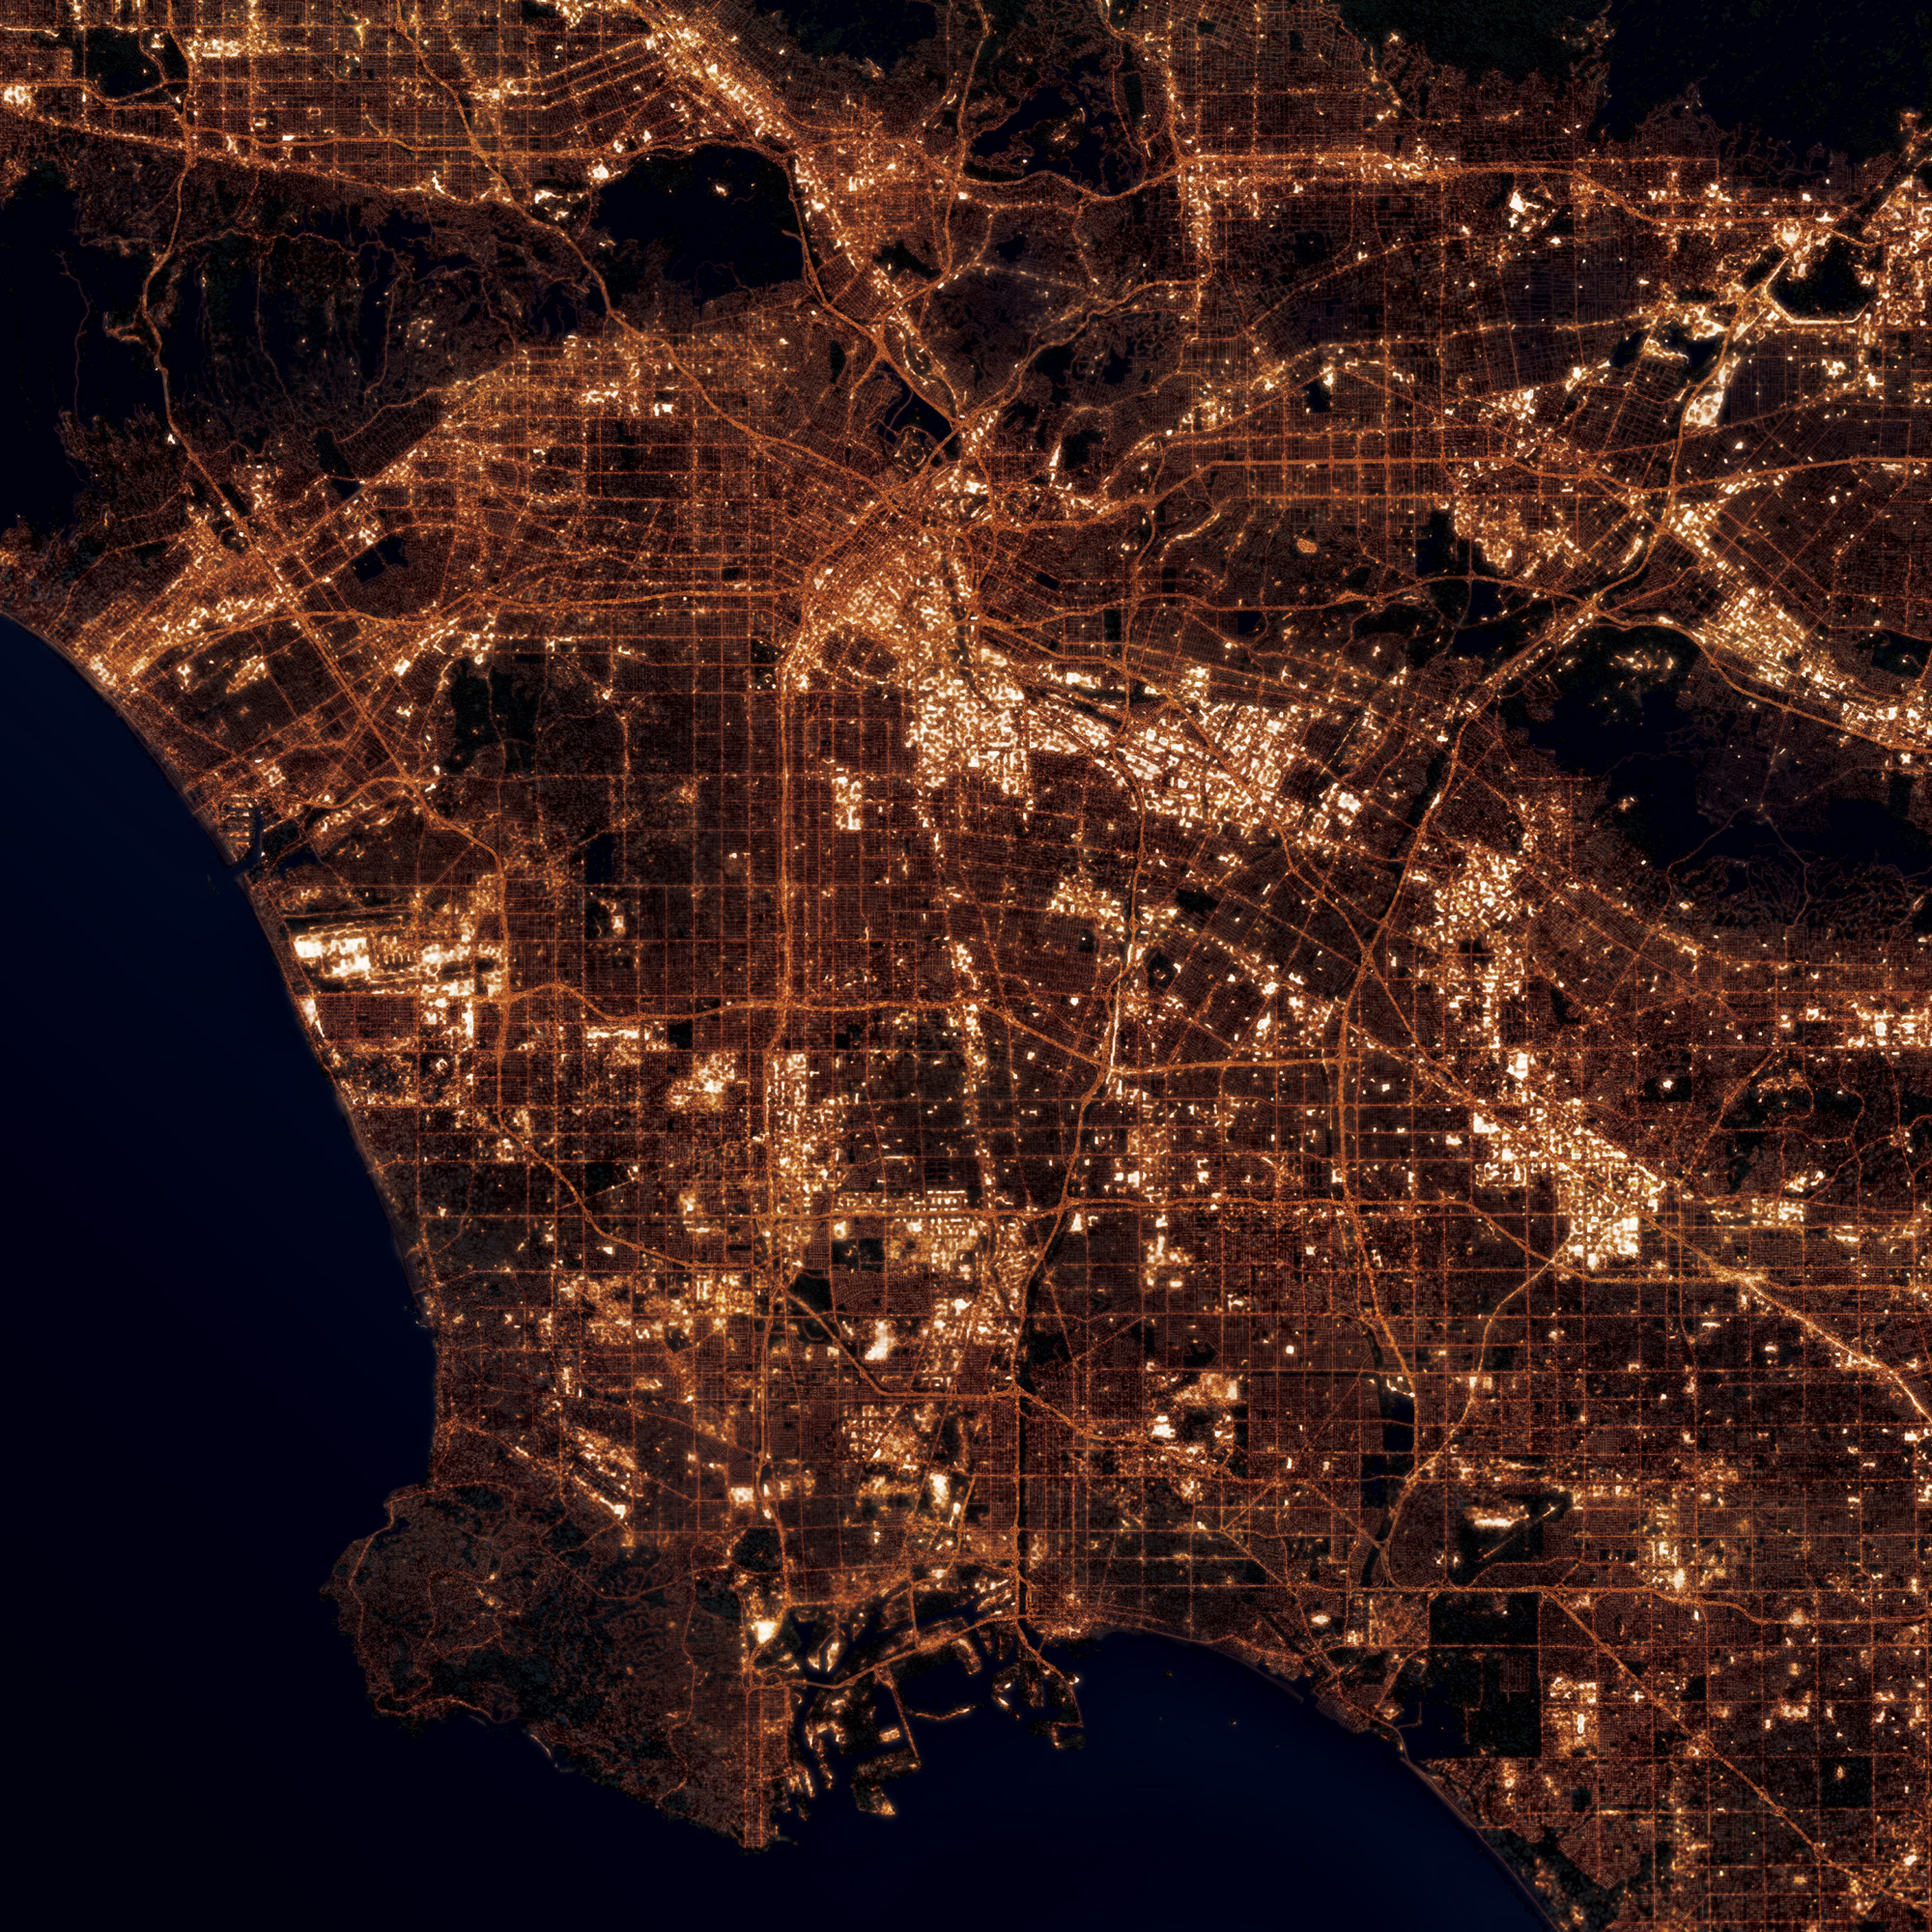 Los Angeles, California at Night - City Prints